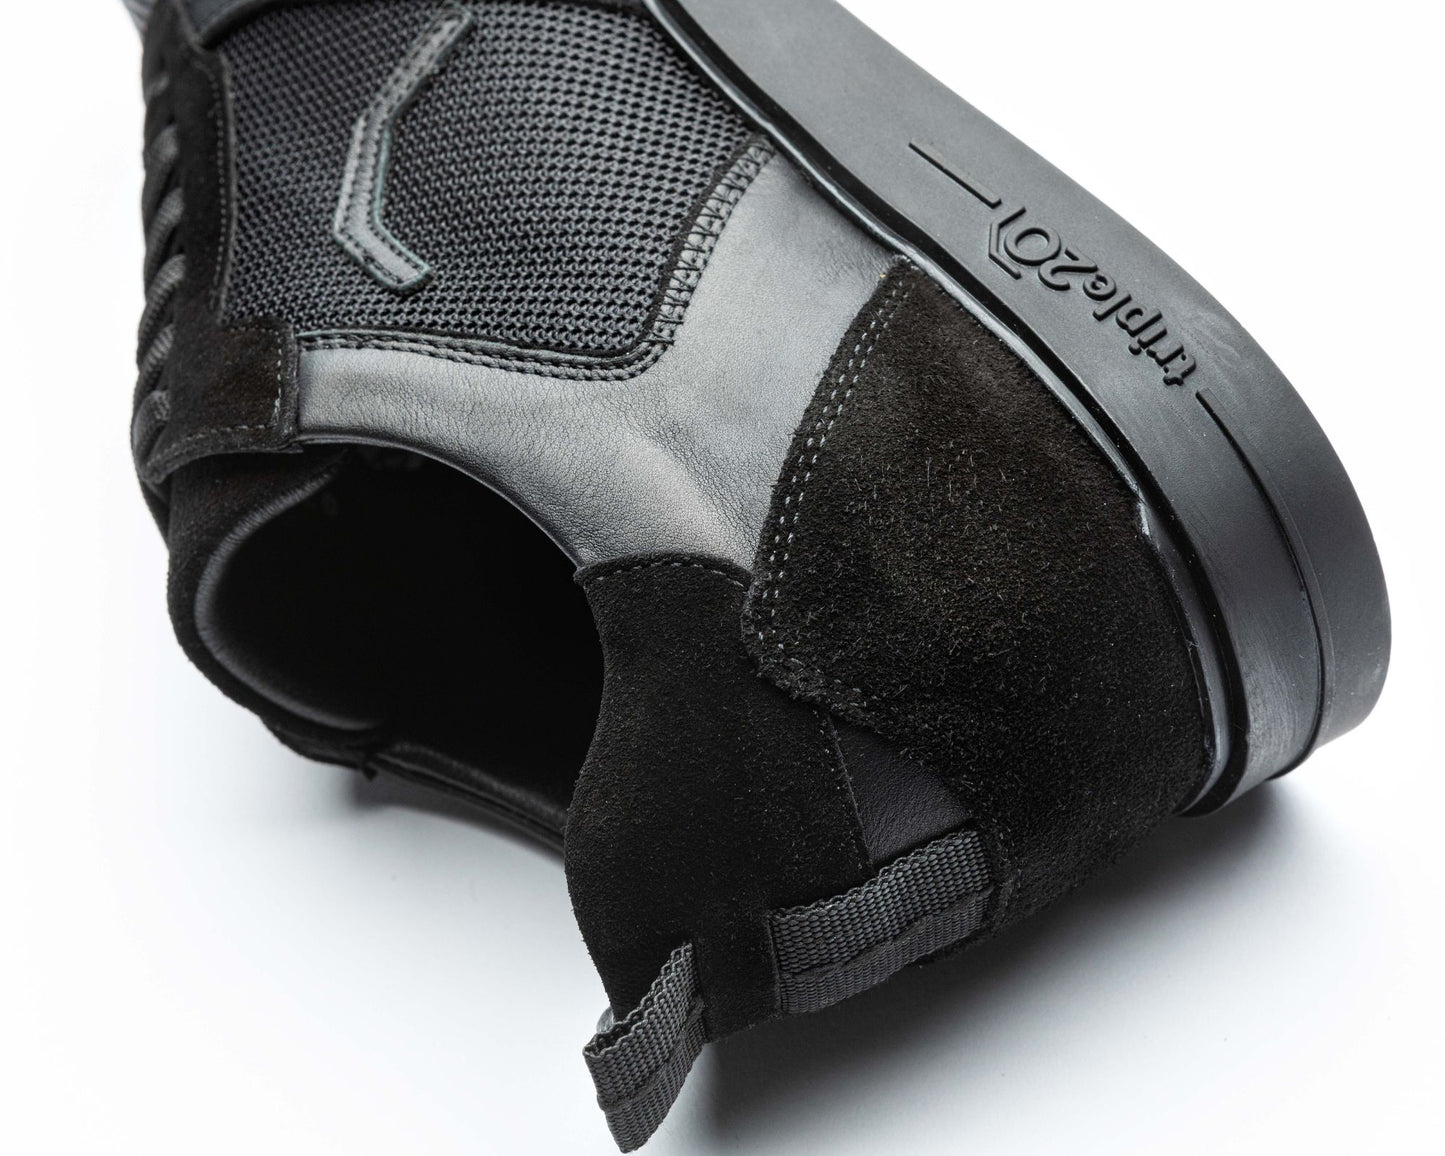 Nahaufnahme eines schwarzen triple20 Dartsschuhs, zu sehen ist der Schuh in auf der Seite liegender Position mit Fokus auf die Hinterkappe. Erkennbar, neben den zahlreichen Details, ist zum Beispiel das feine schwarze Lederfutter des Modells.